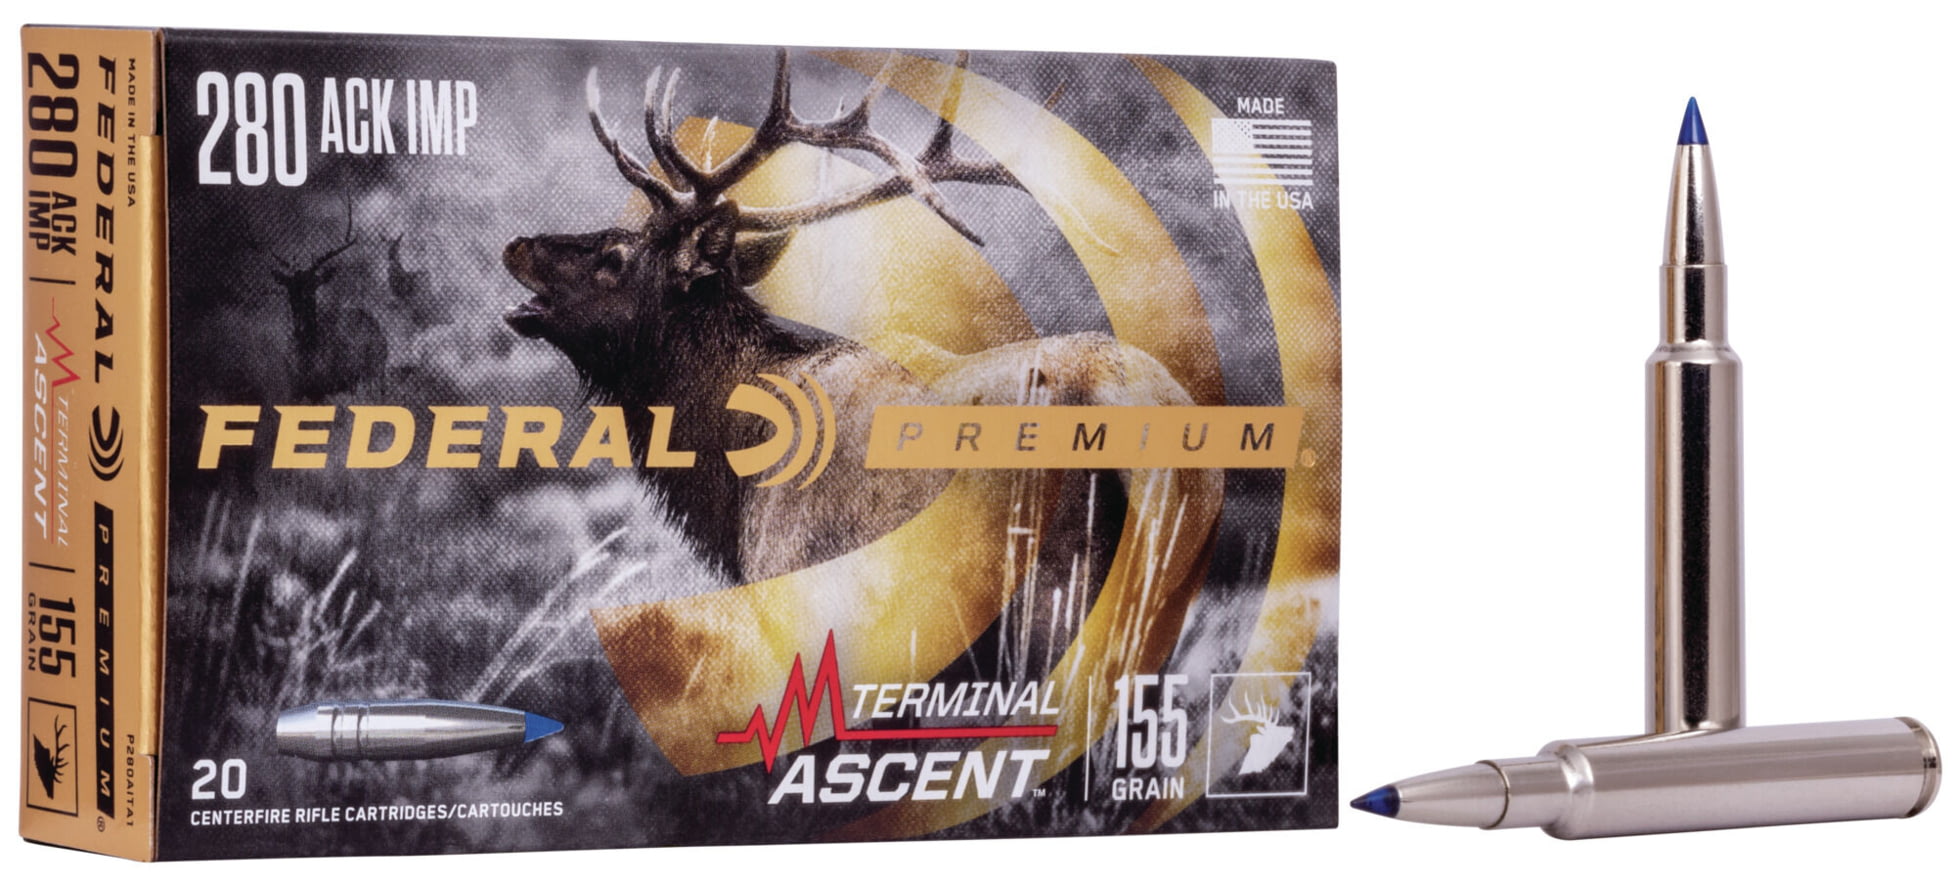 Federal Premium TERMINAL ASCENT .280 Remington Improved 155 grain Terminal Ascent Centerfire Rifle Ammunition